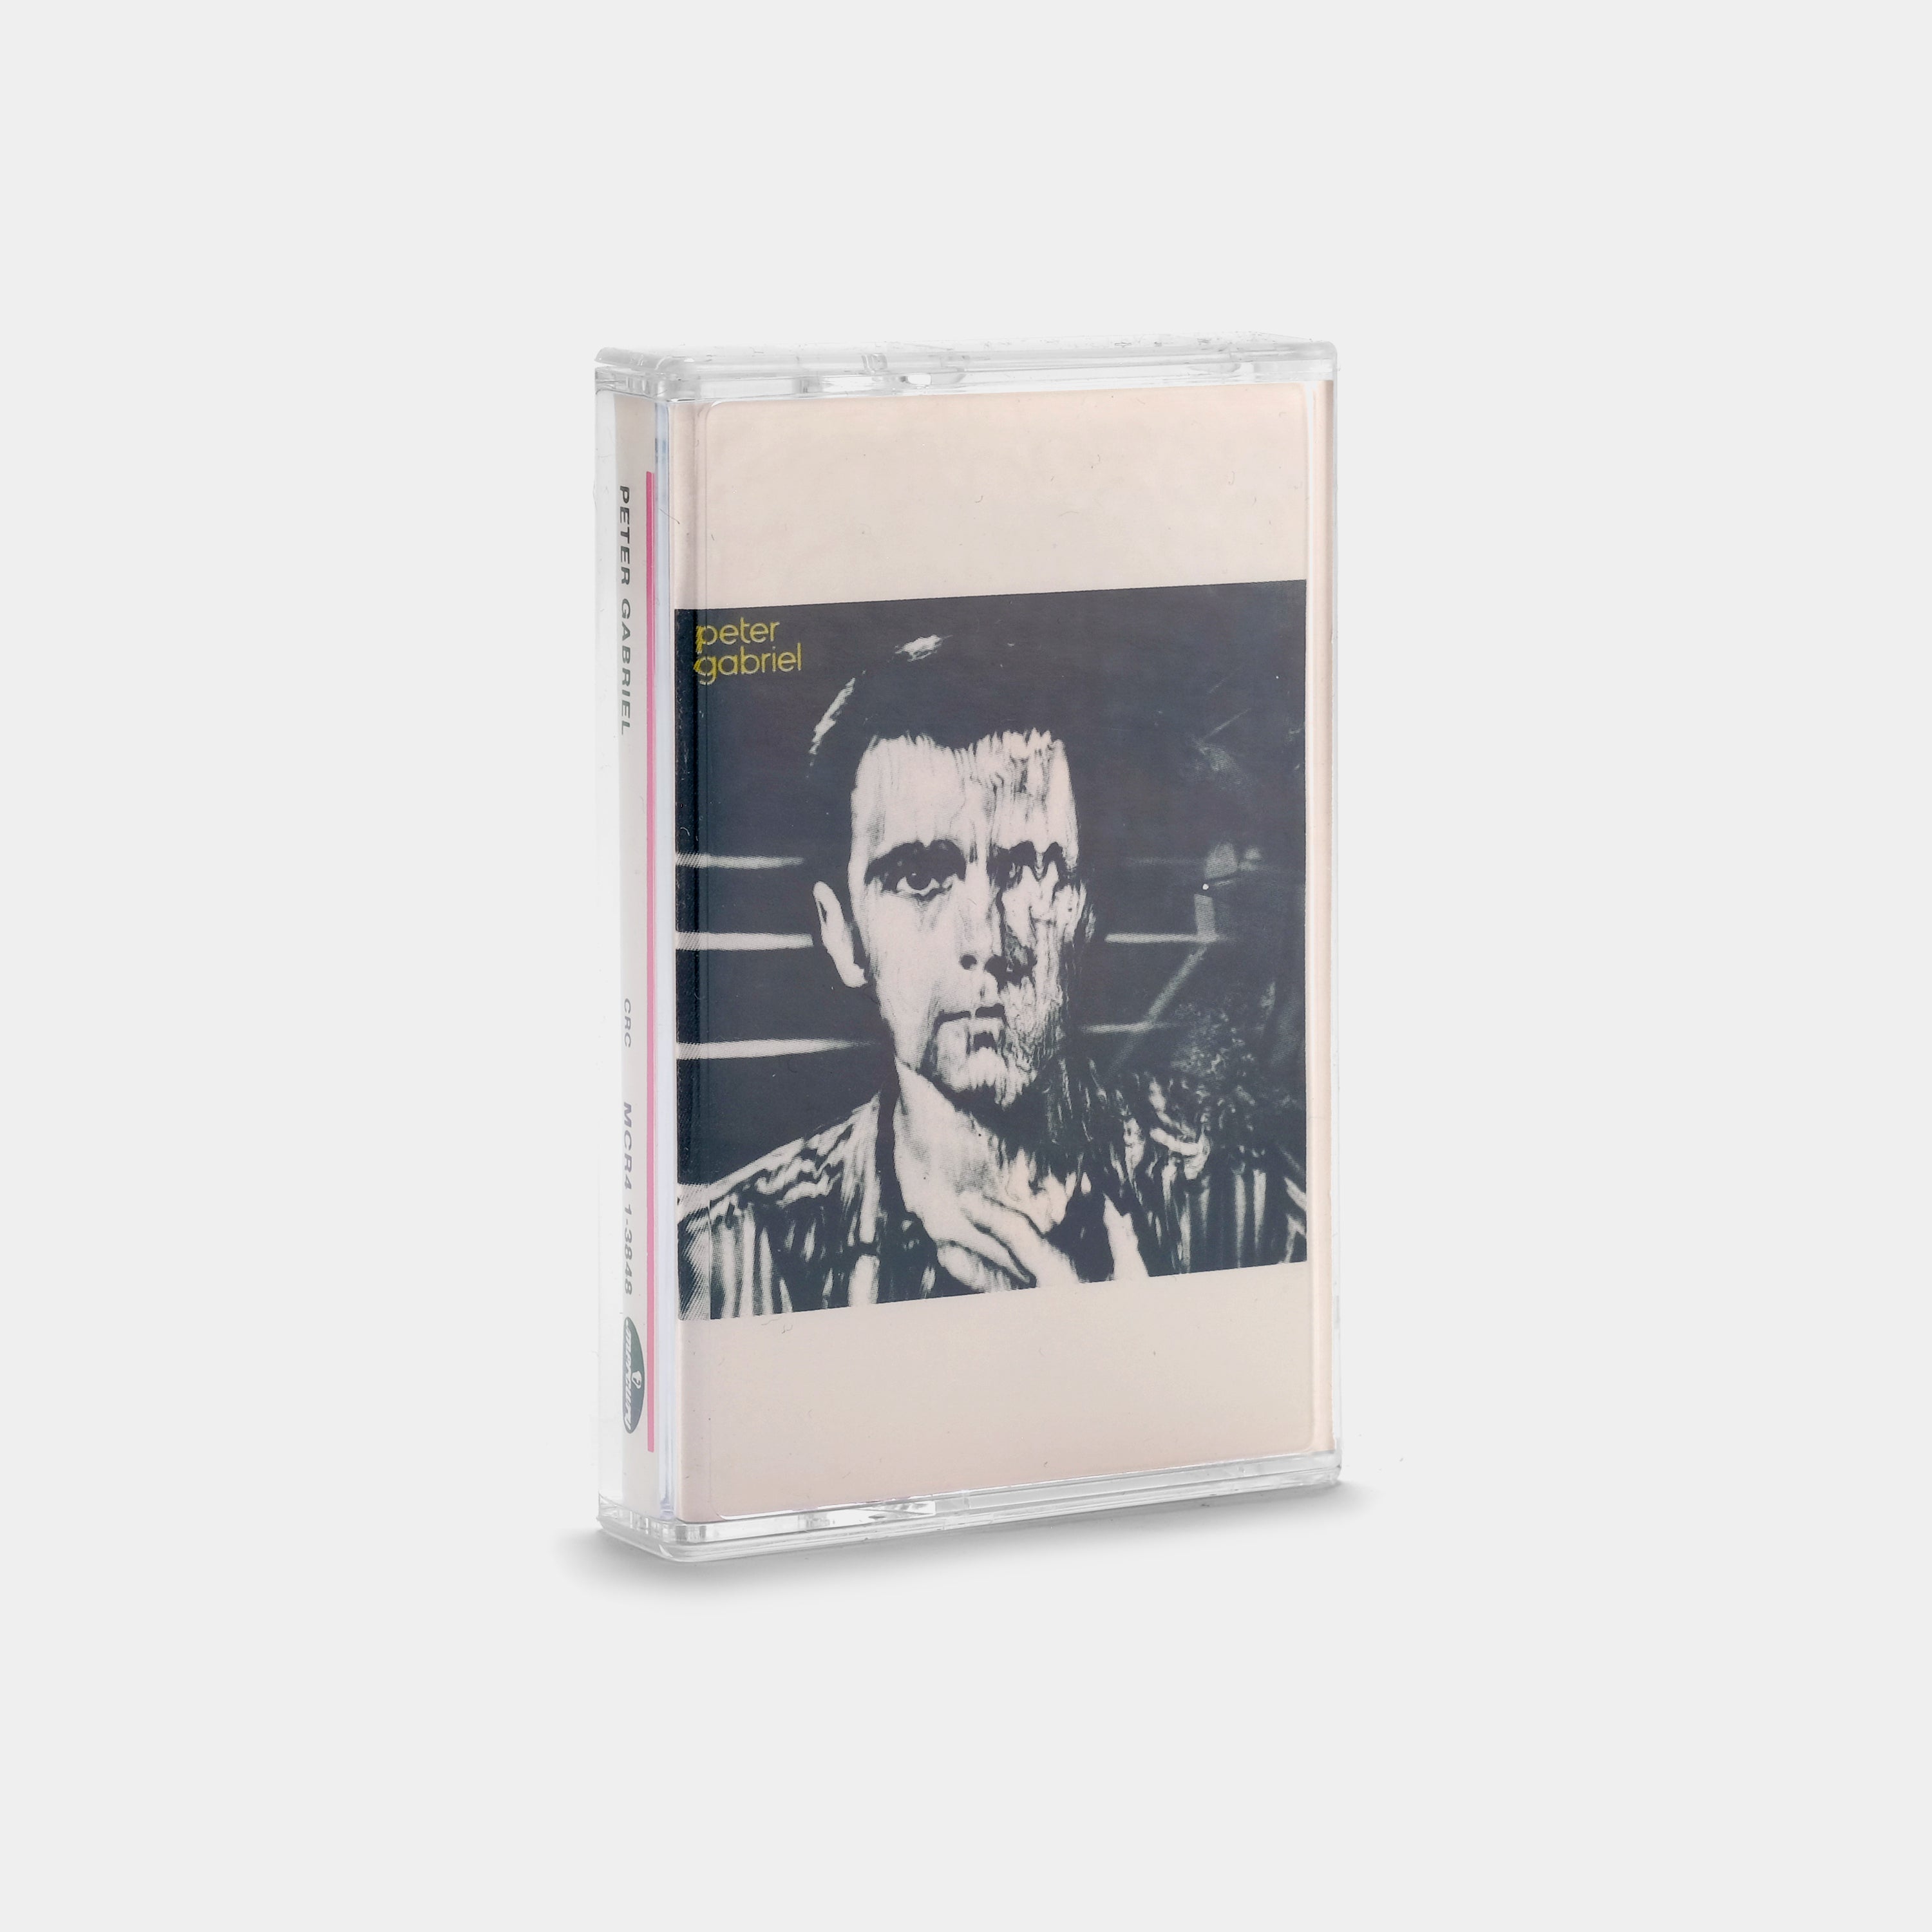 Peter Gabriel - Peter Gabriel Cassette Tape